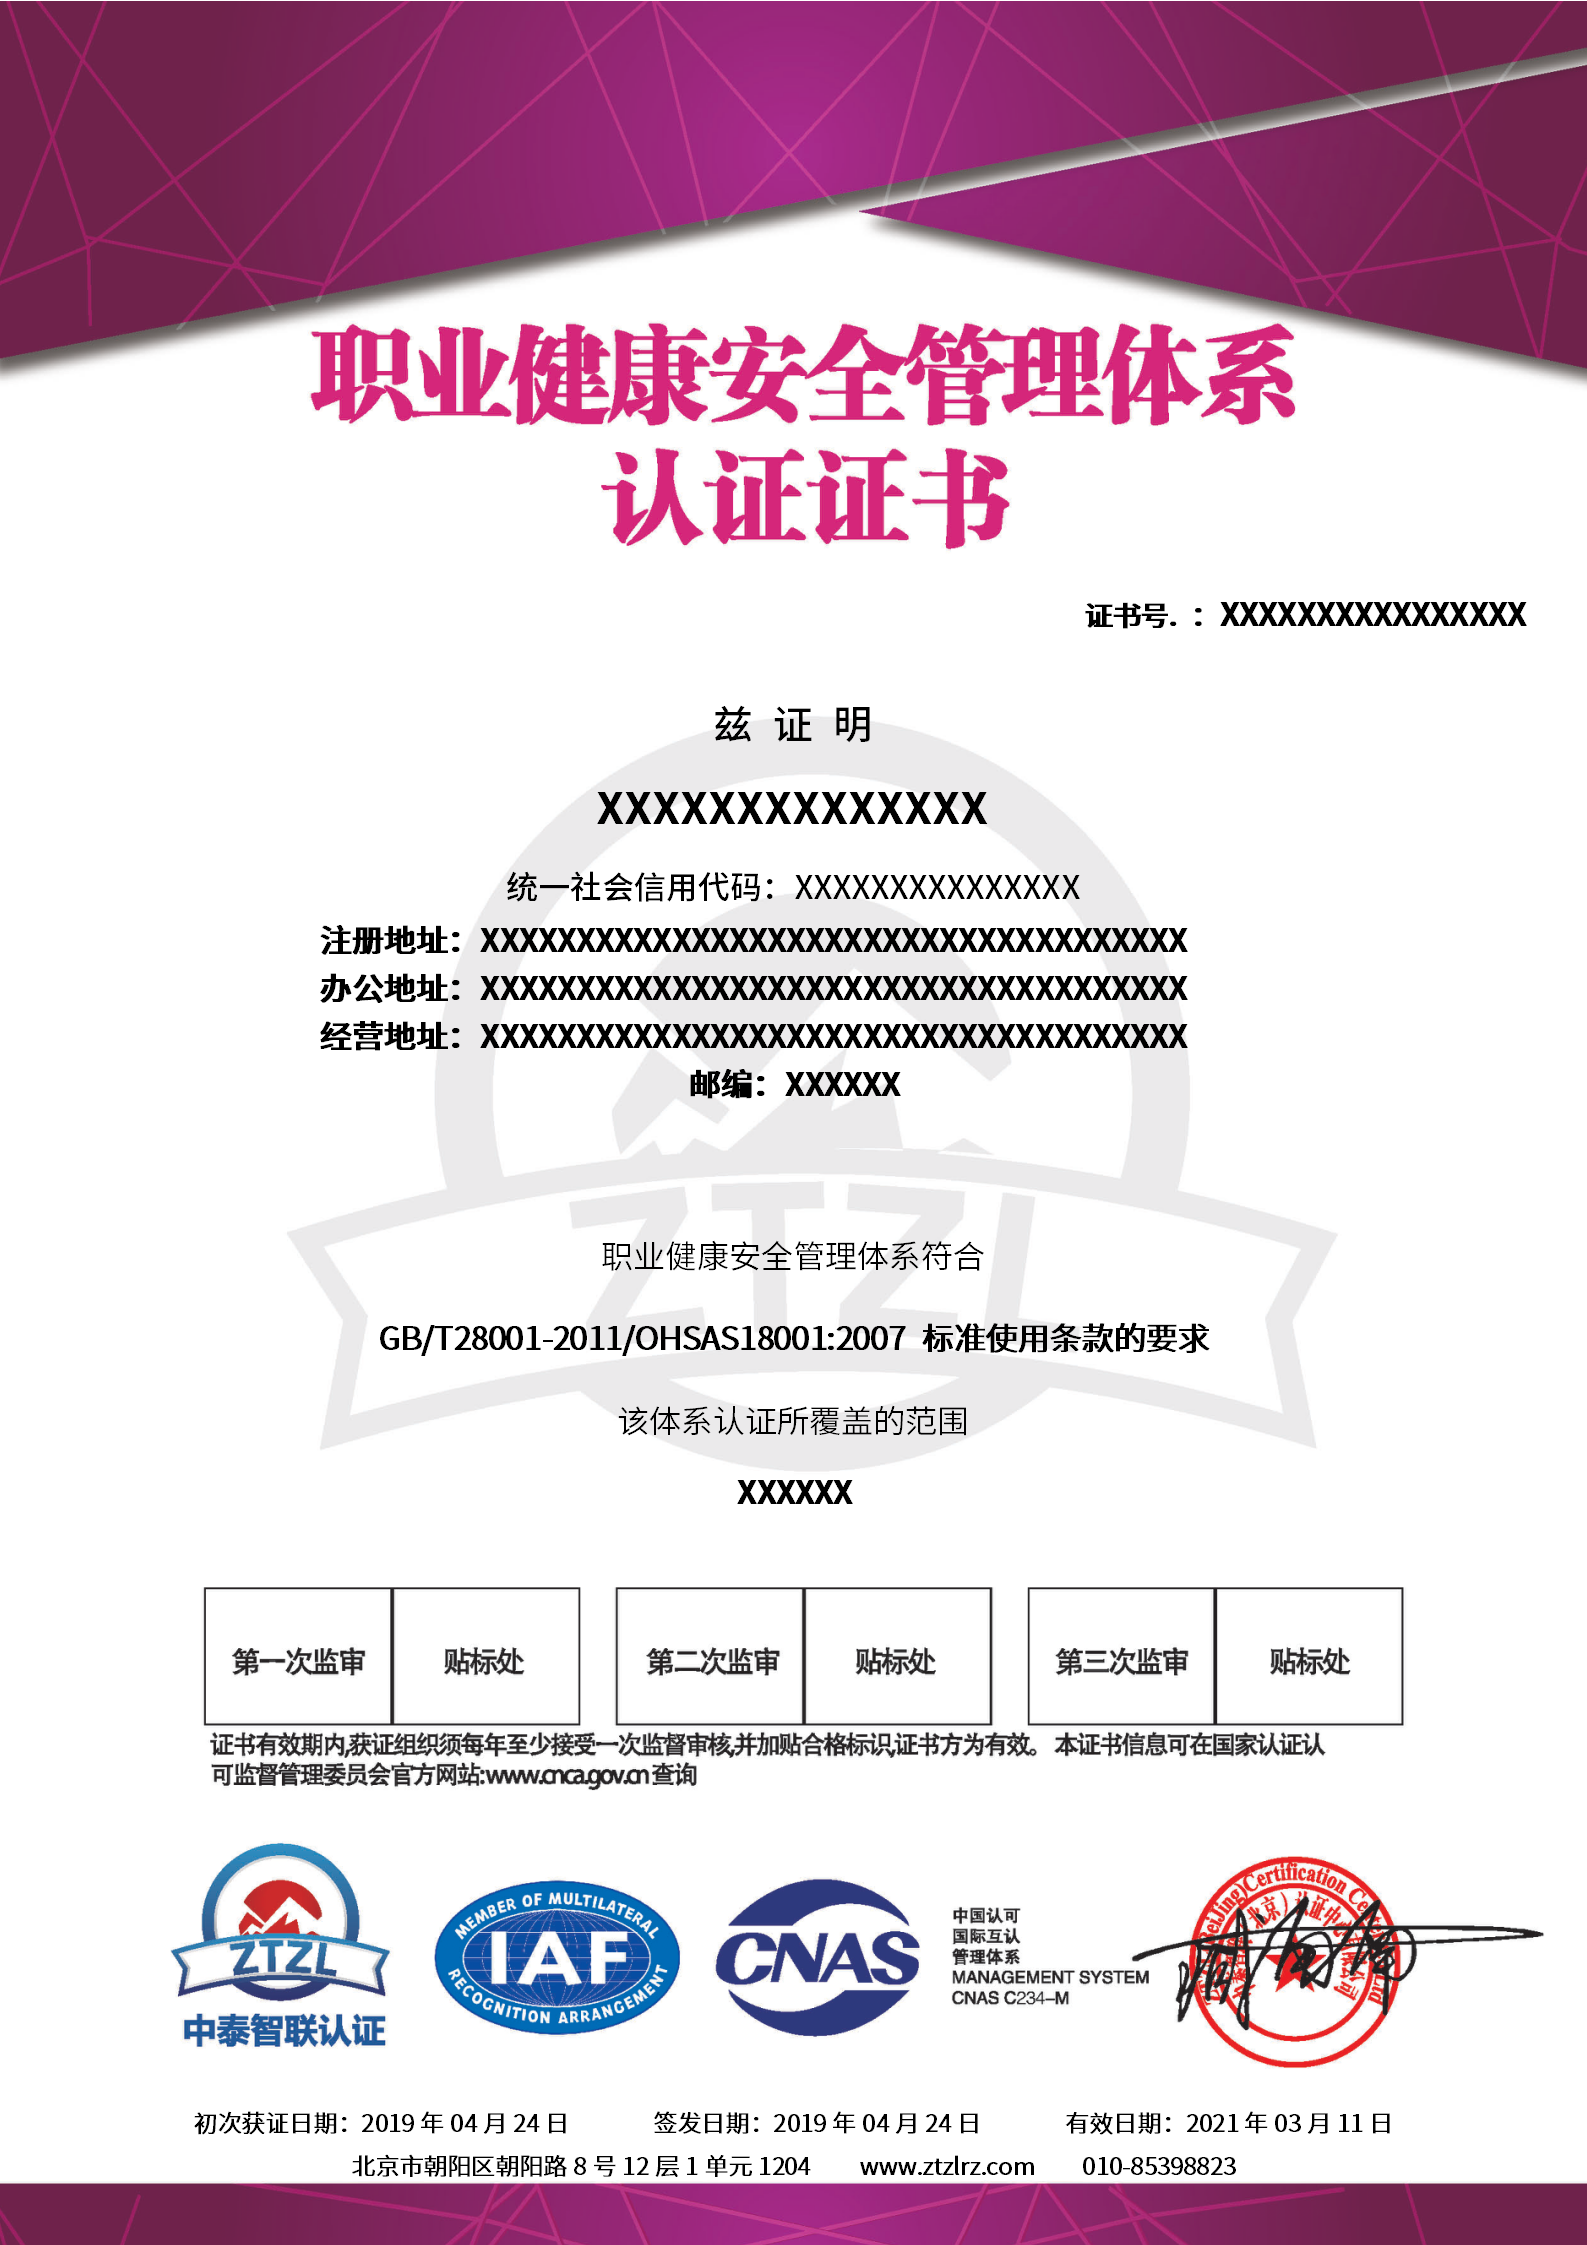 证书样本－职业健康安全管理体系认证证书-带CNAS标_01.png